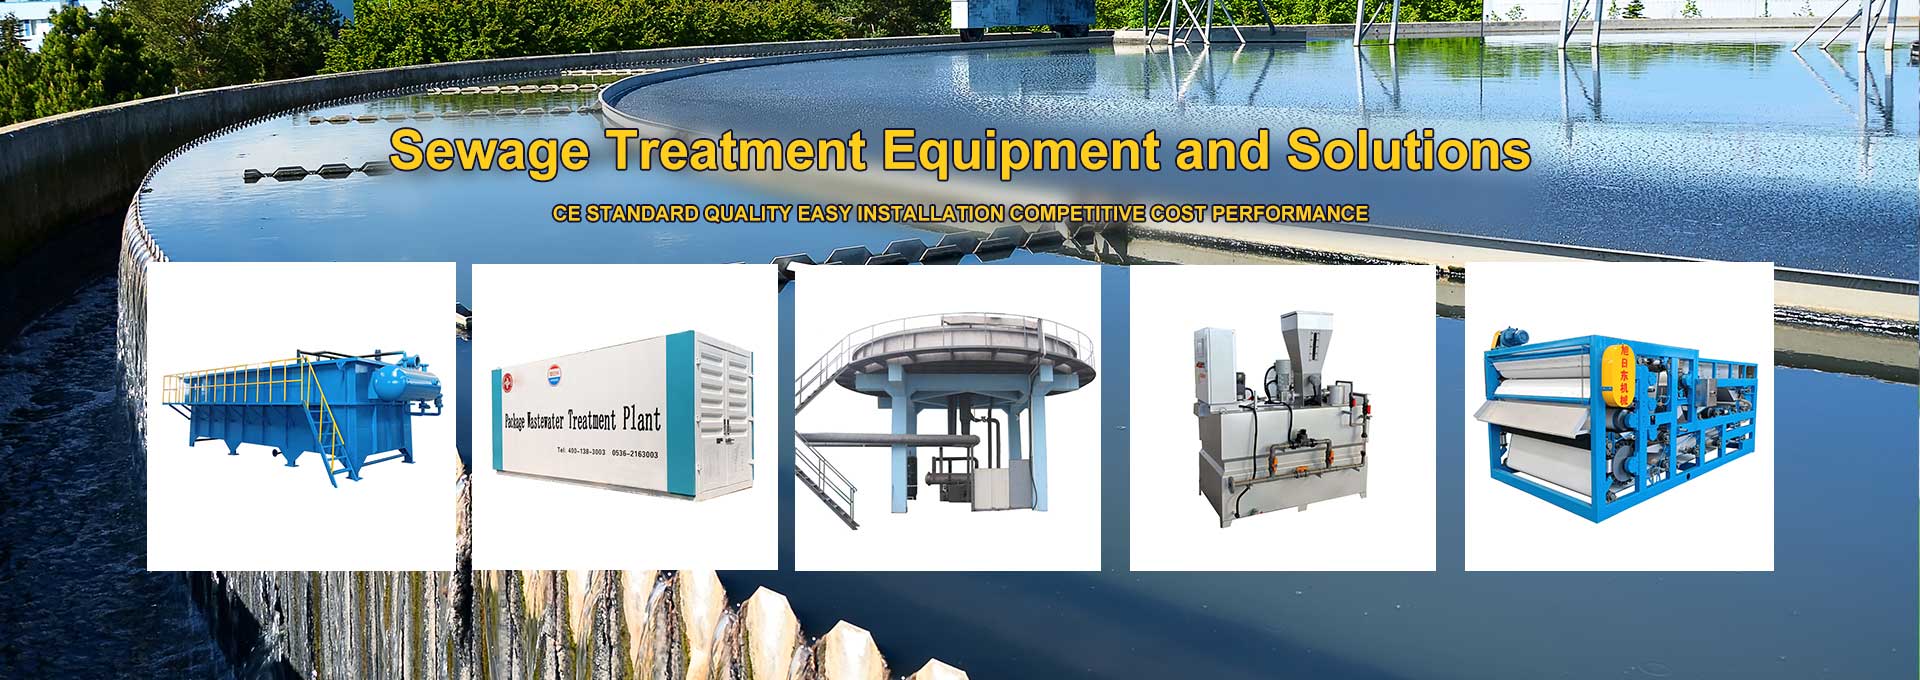 equipo de tratamiento de aguas residuales